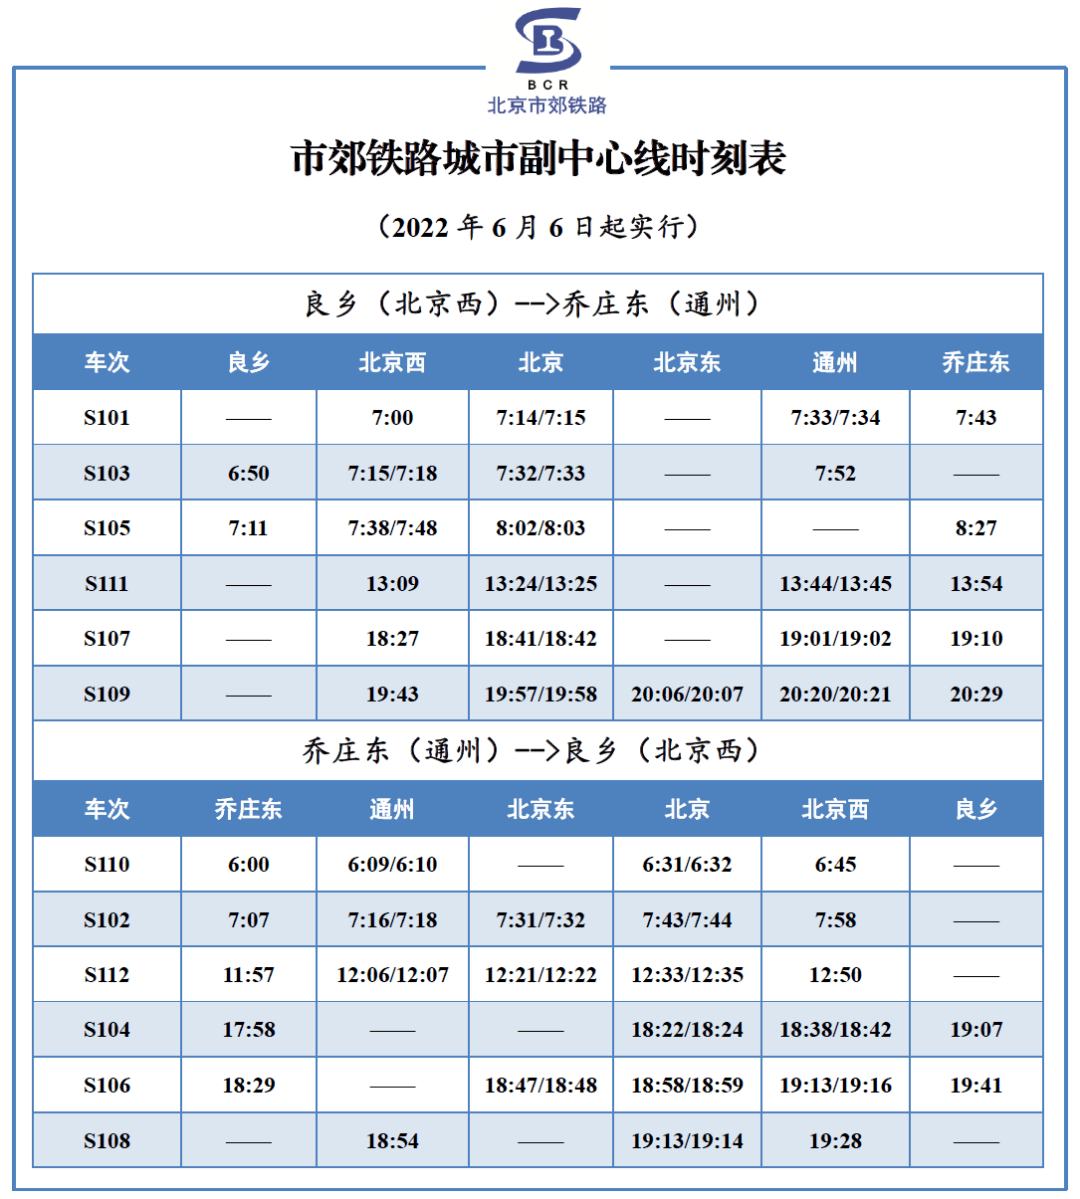 8月9日至10月31日 西安地铁2号线、4号线延长末班车发车时间 - 陕工网